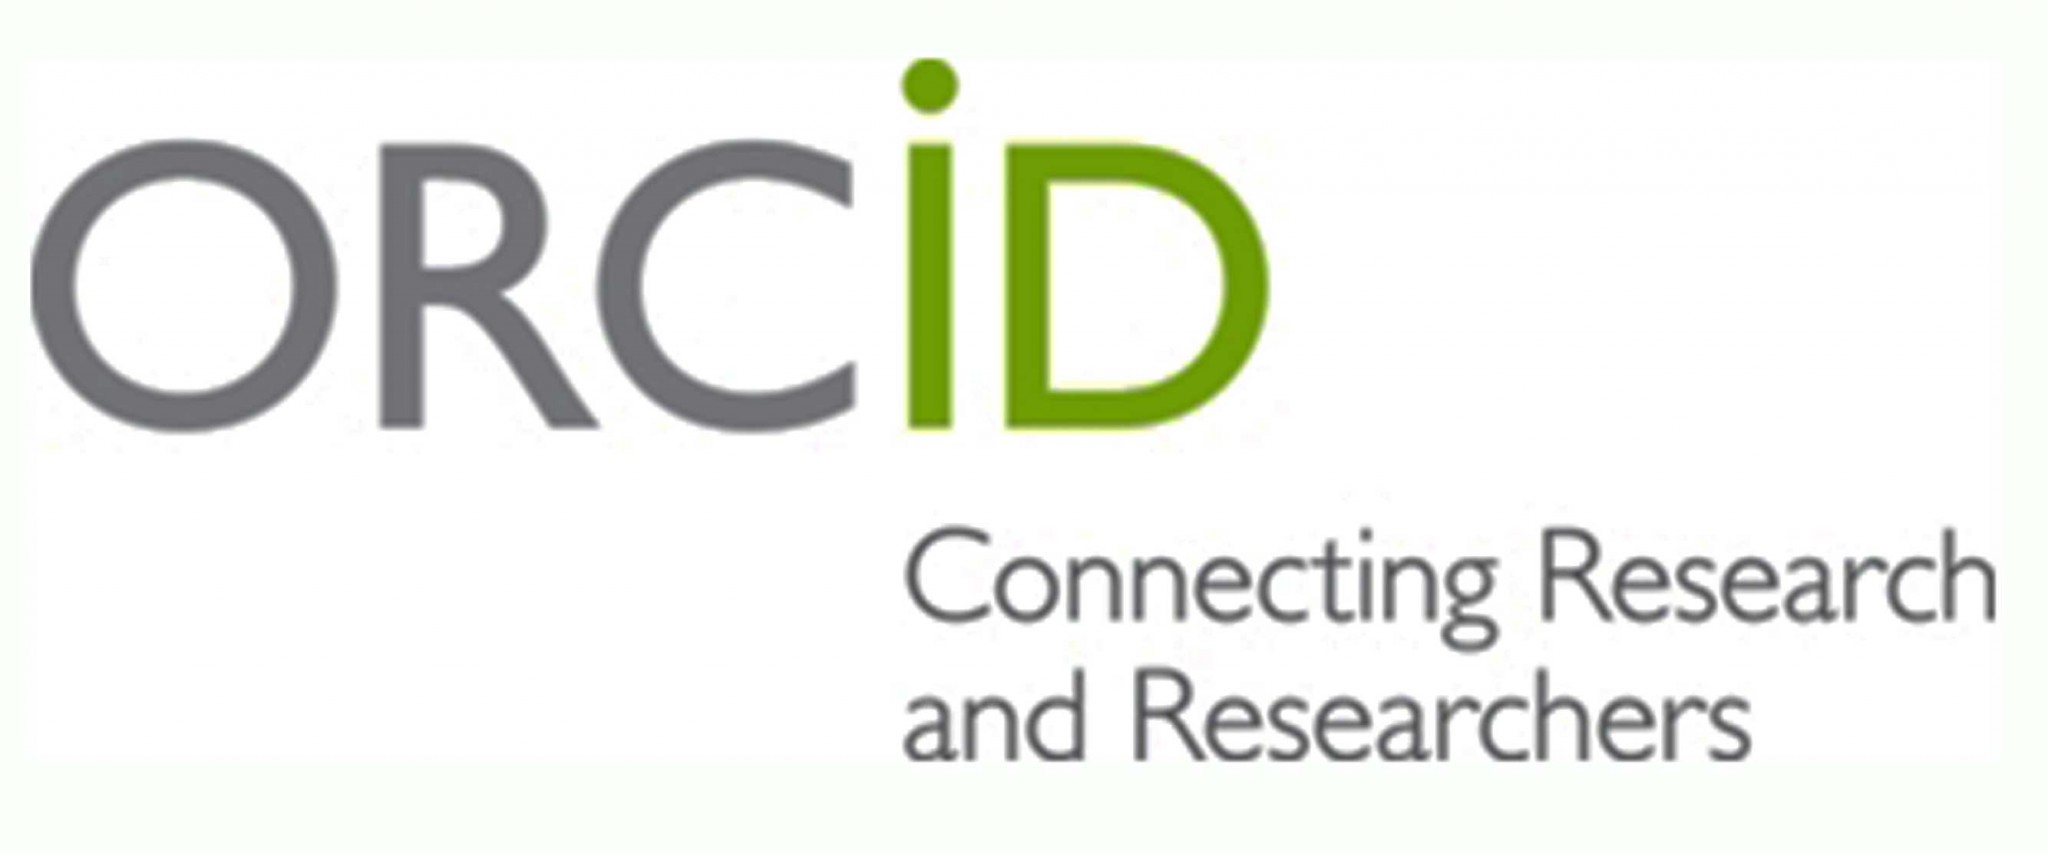 Orcid-logo1